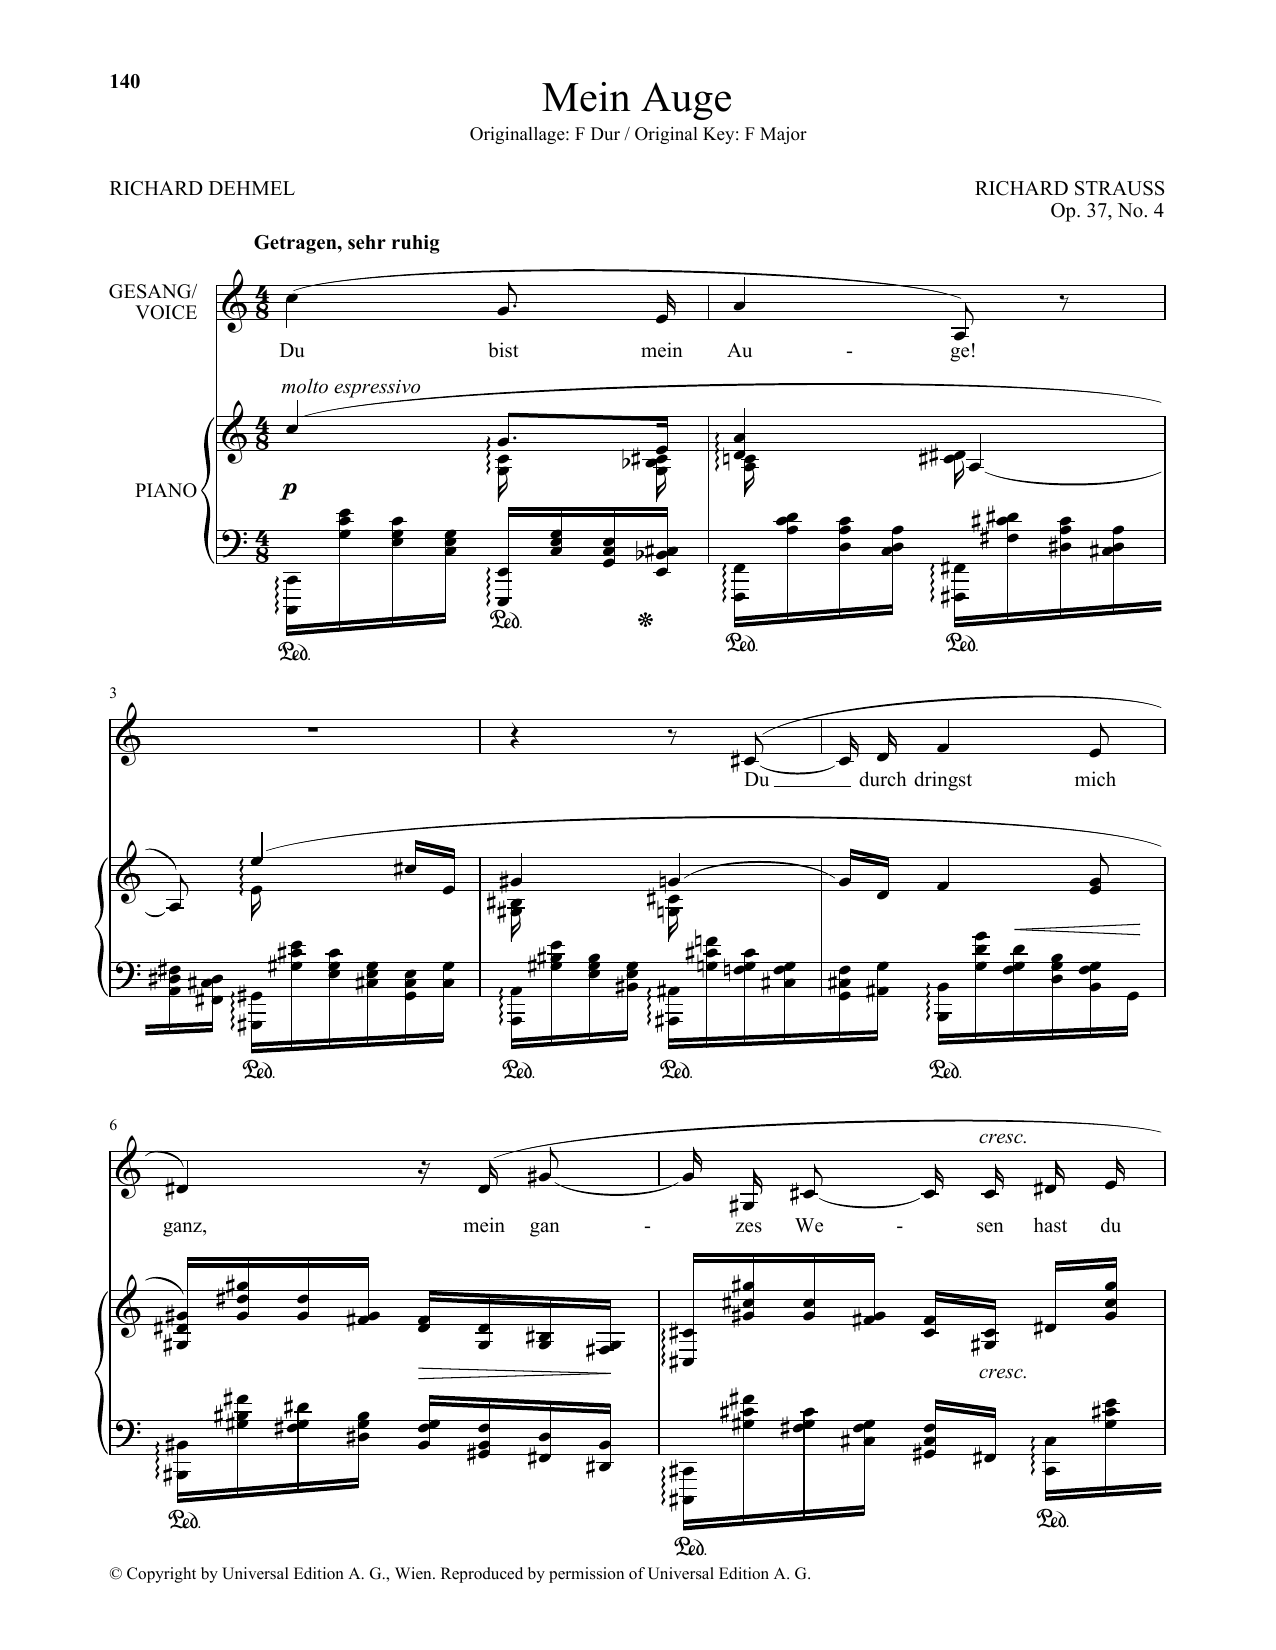 Download Richard Strauss Mein Auge (Low Voice) Sheet Music